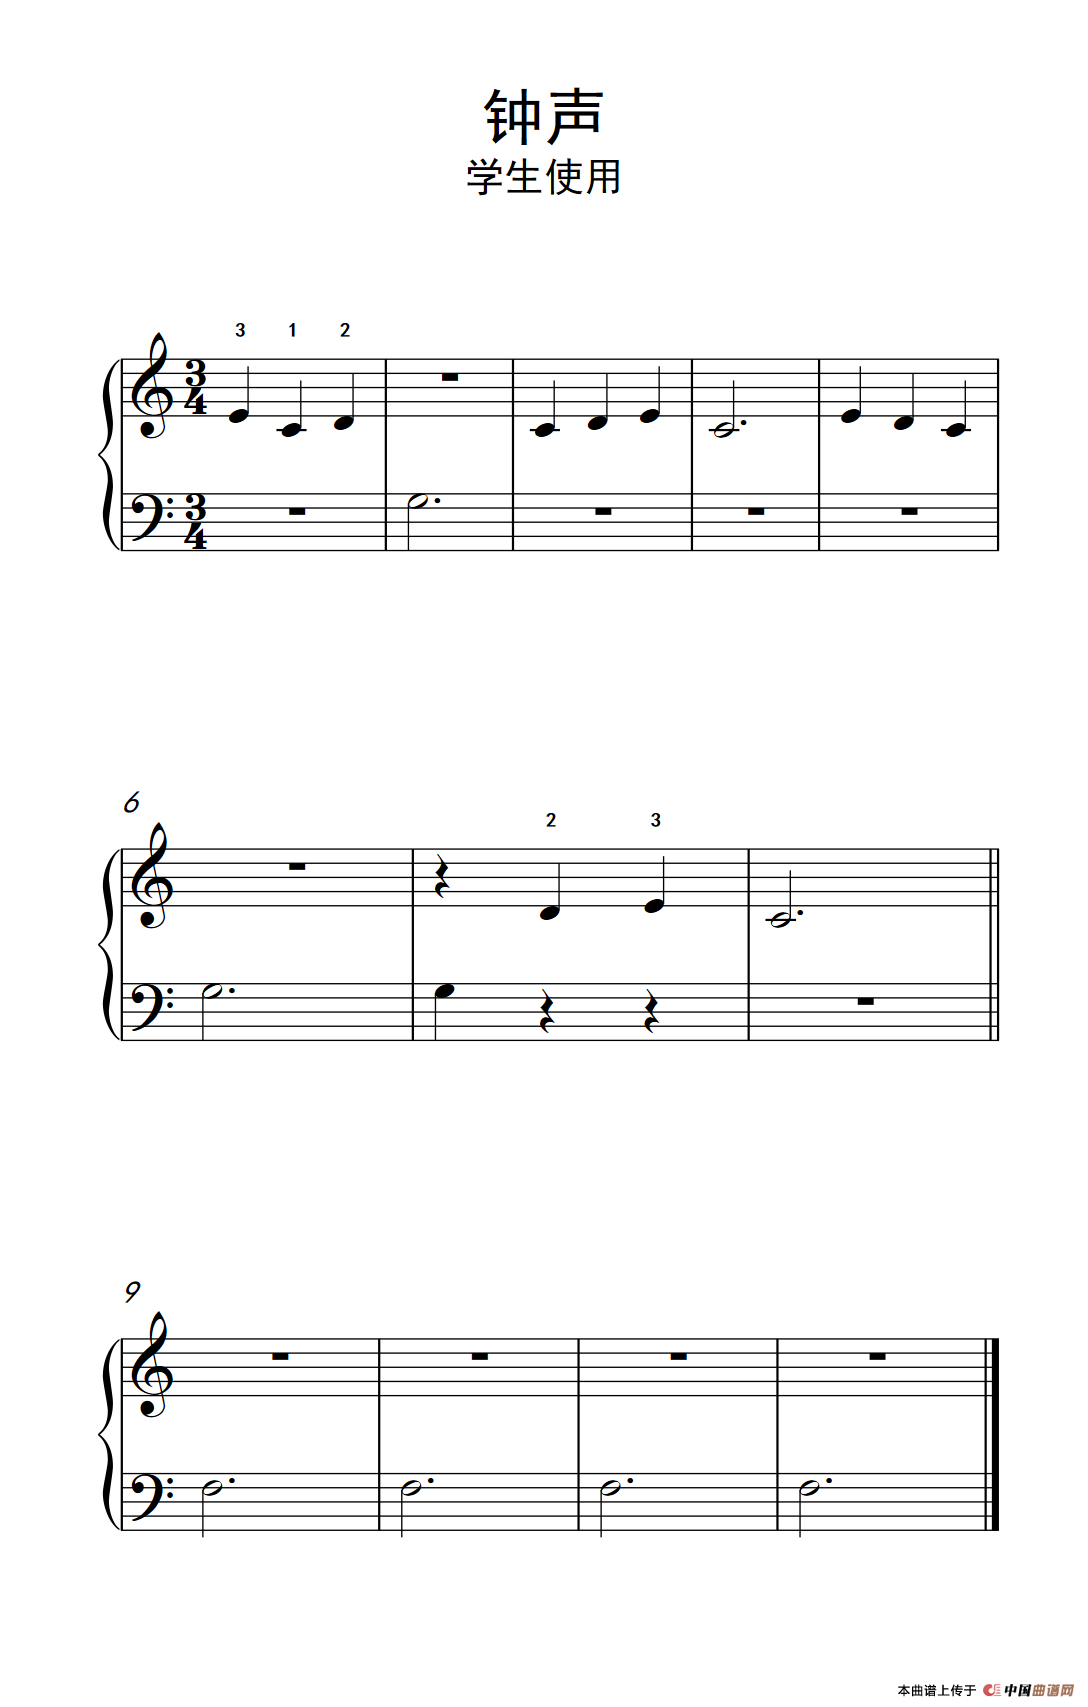 《钟声-学生使用》钢琴曲谱图分享